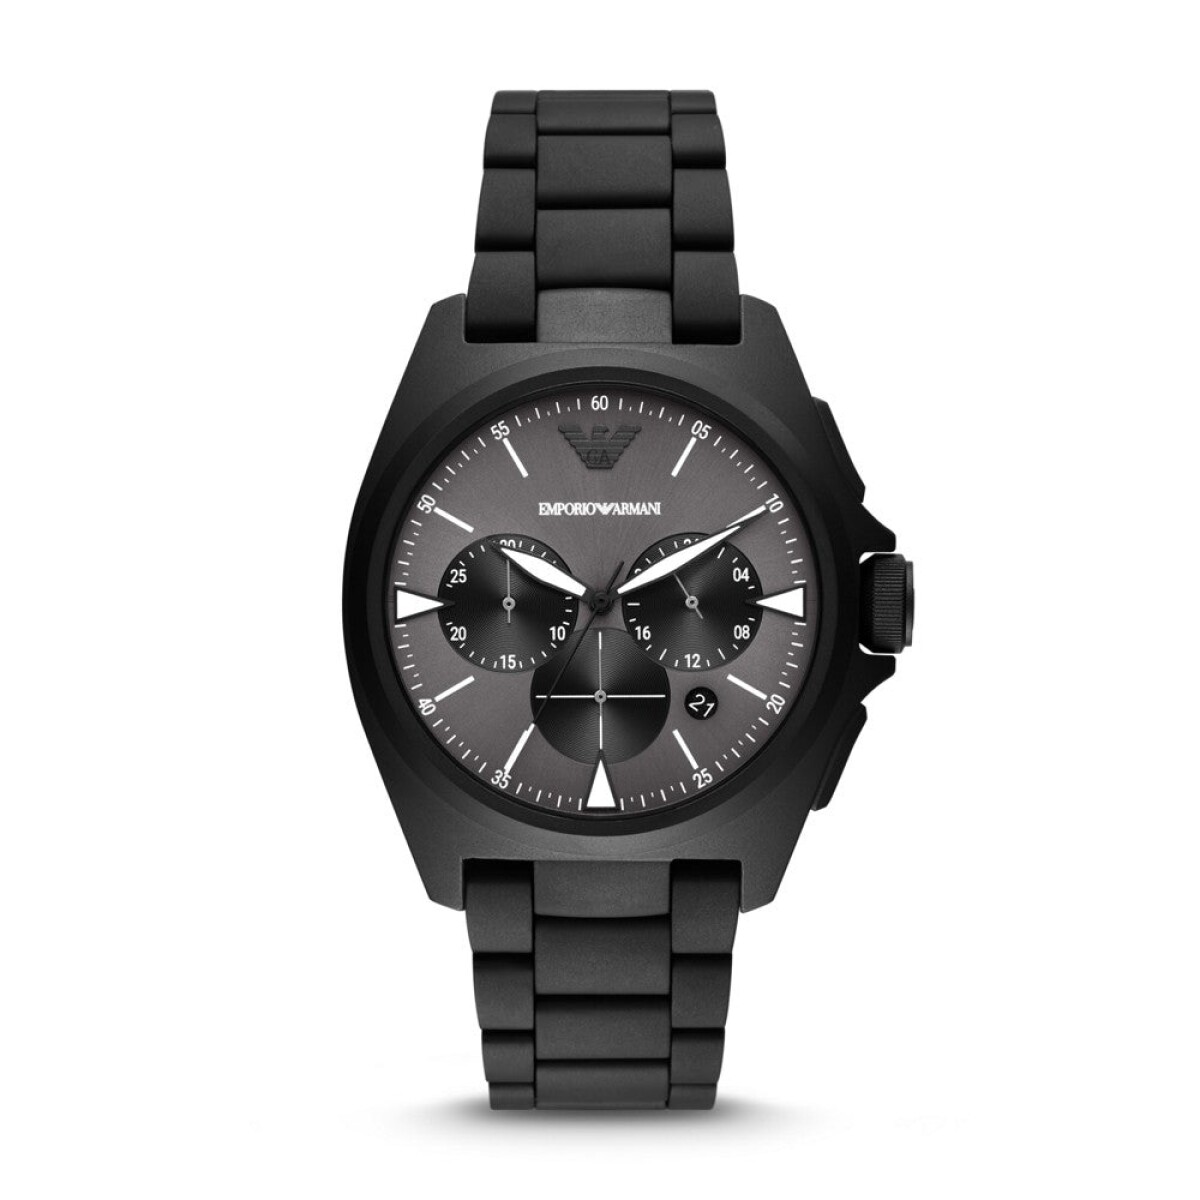 Reloj Emporio Armani Fashion Acero Negro 